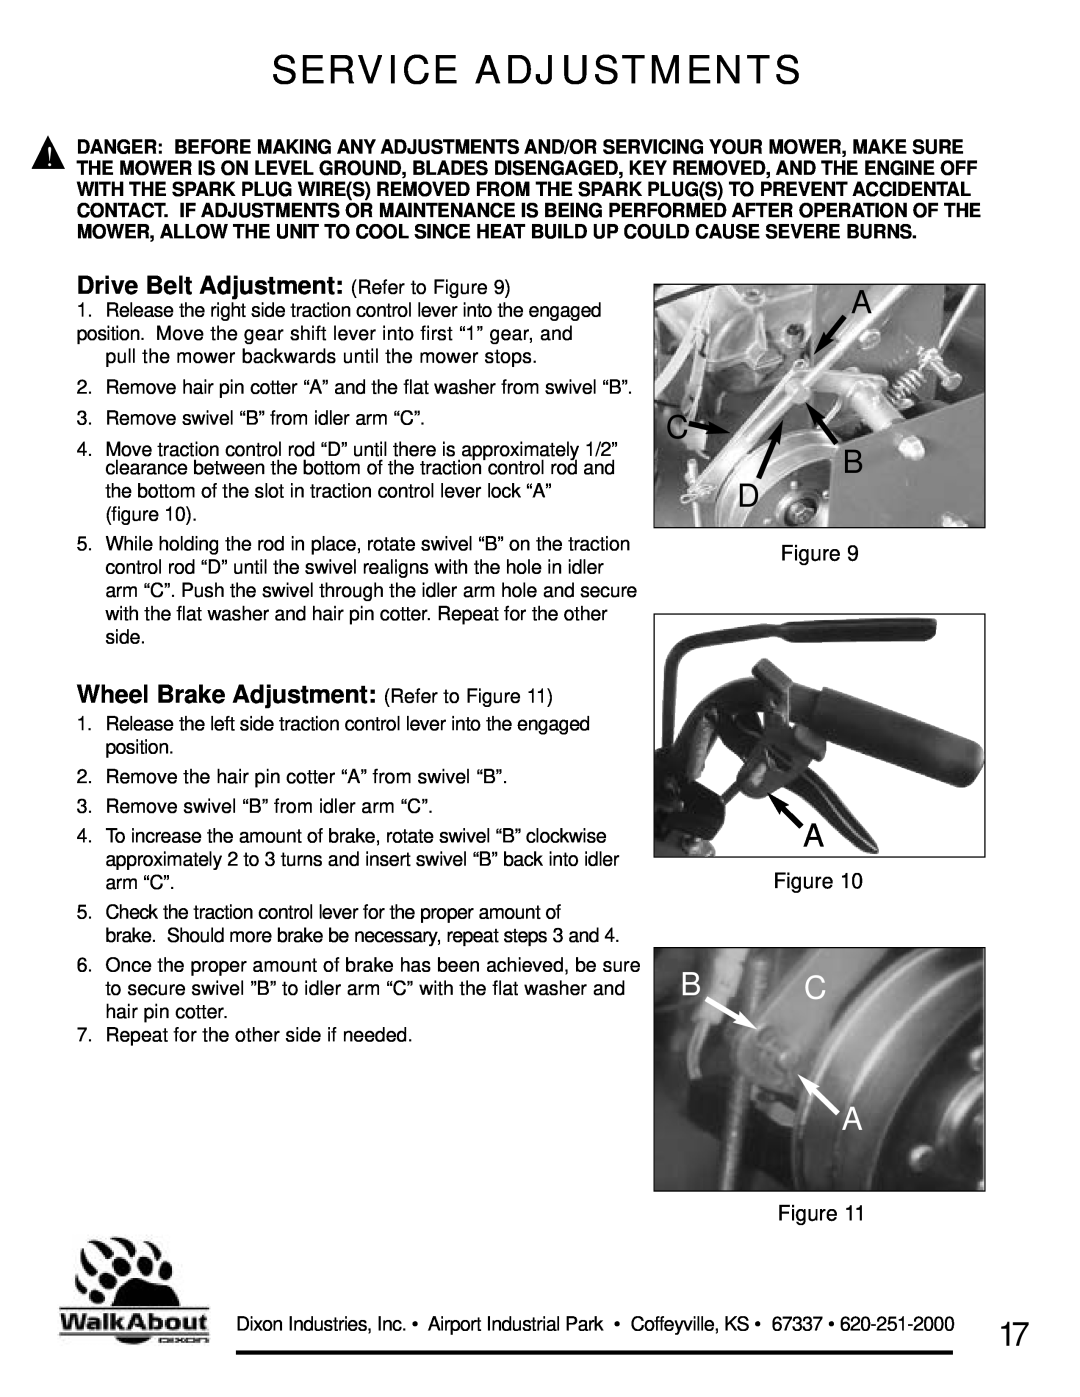 Dixon 36 & 48 Service Adjustments, A C B D, Drive Belt Adjustment Refer to Figure, Wheel Brake Adjustment Refer to Figure 